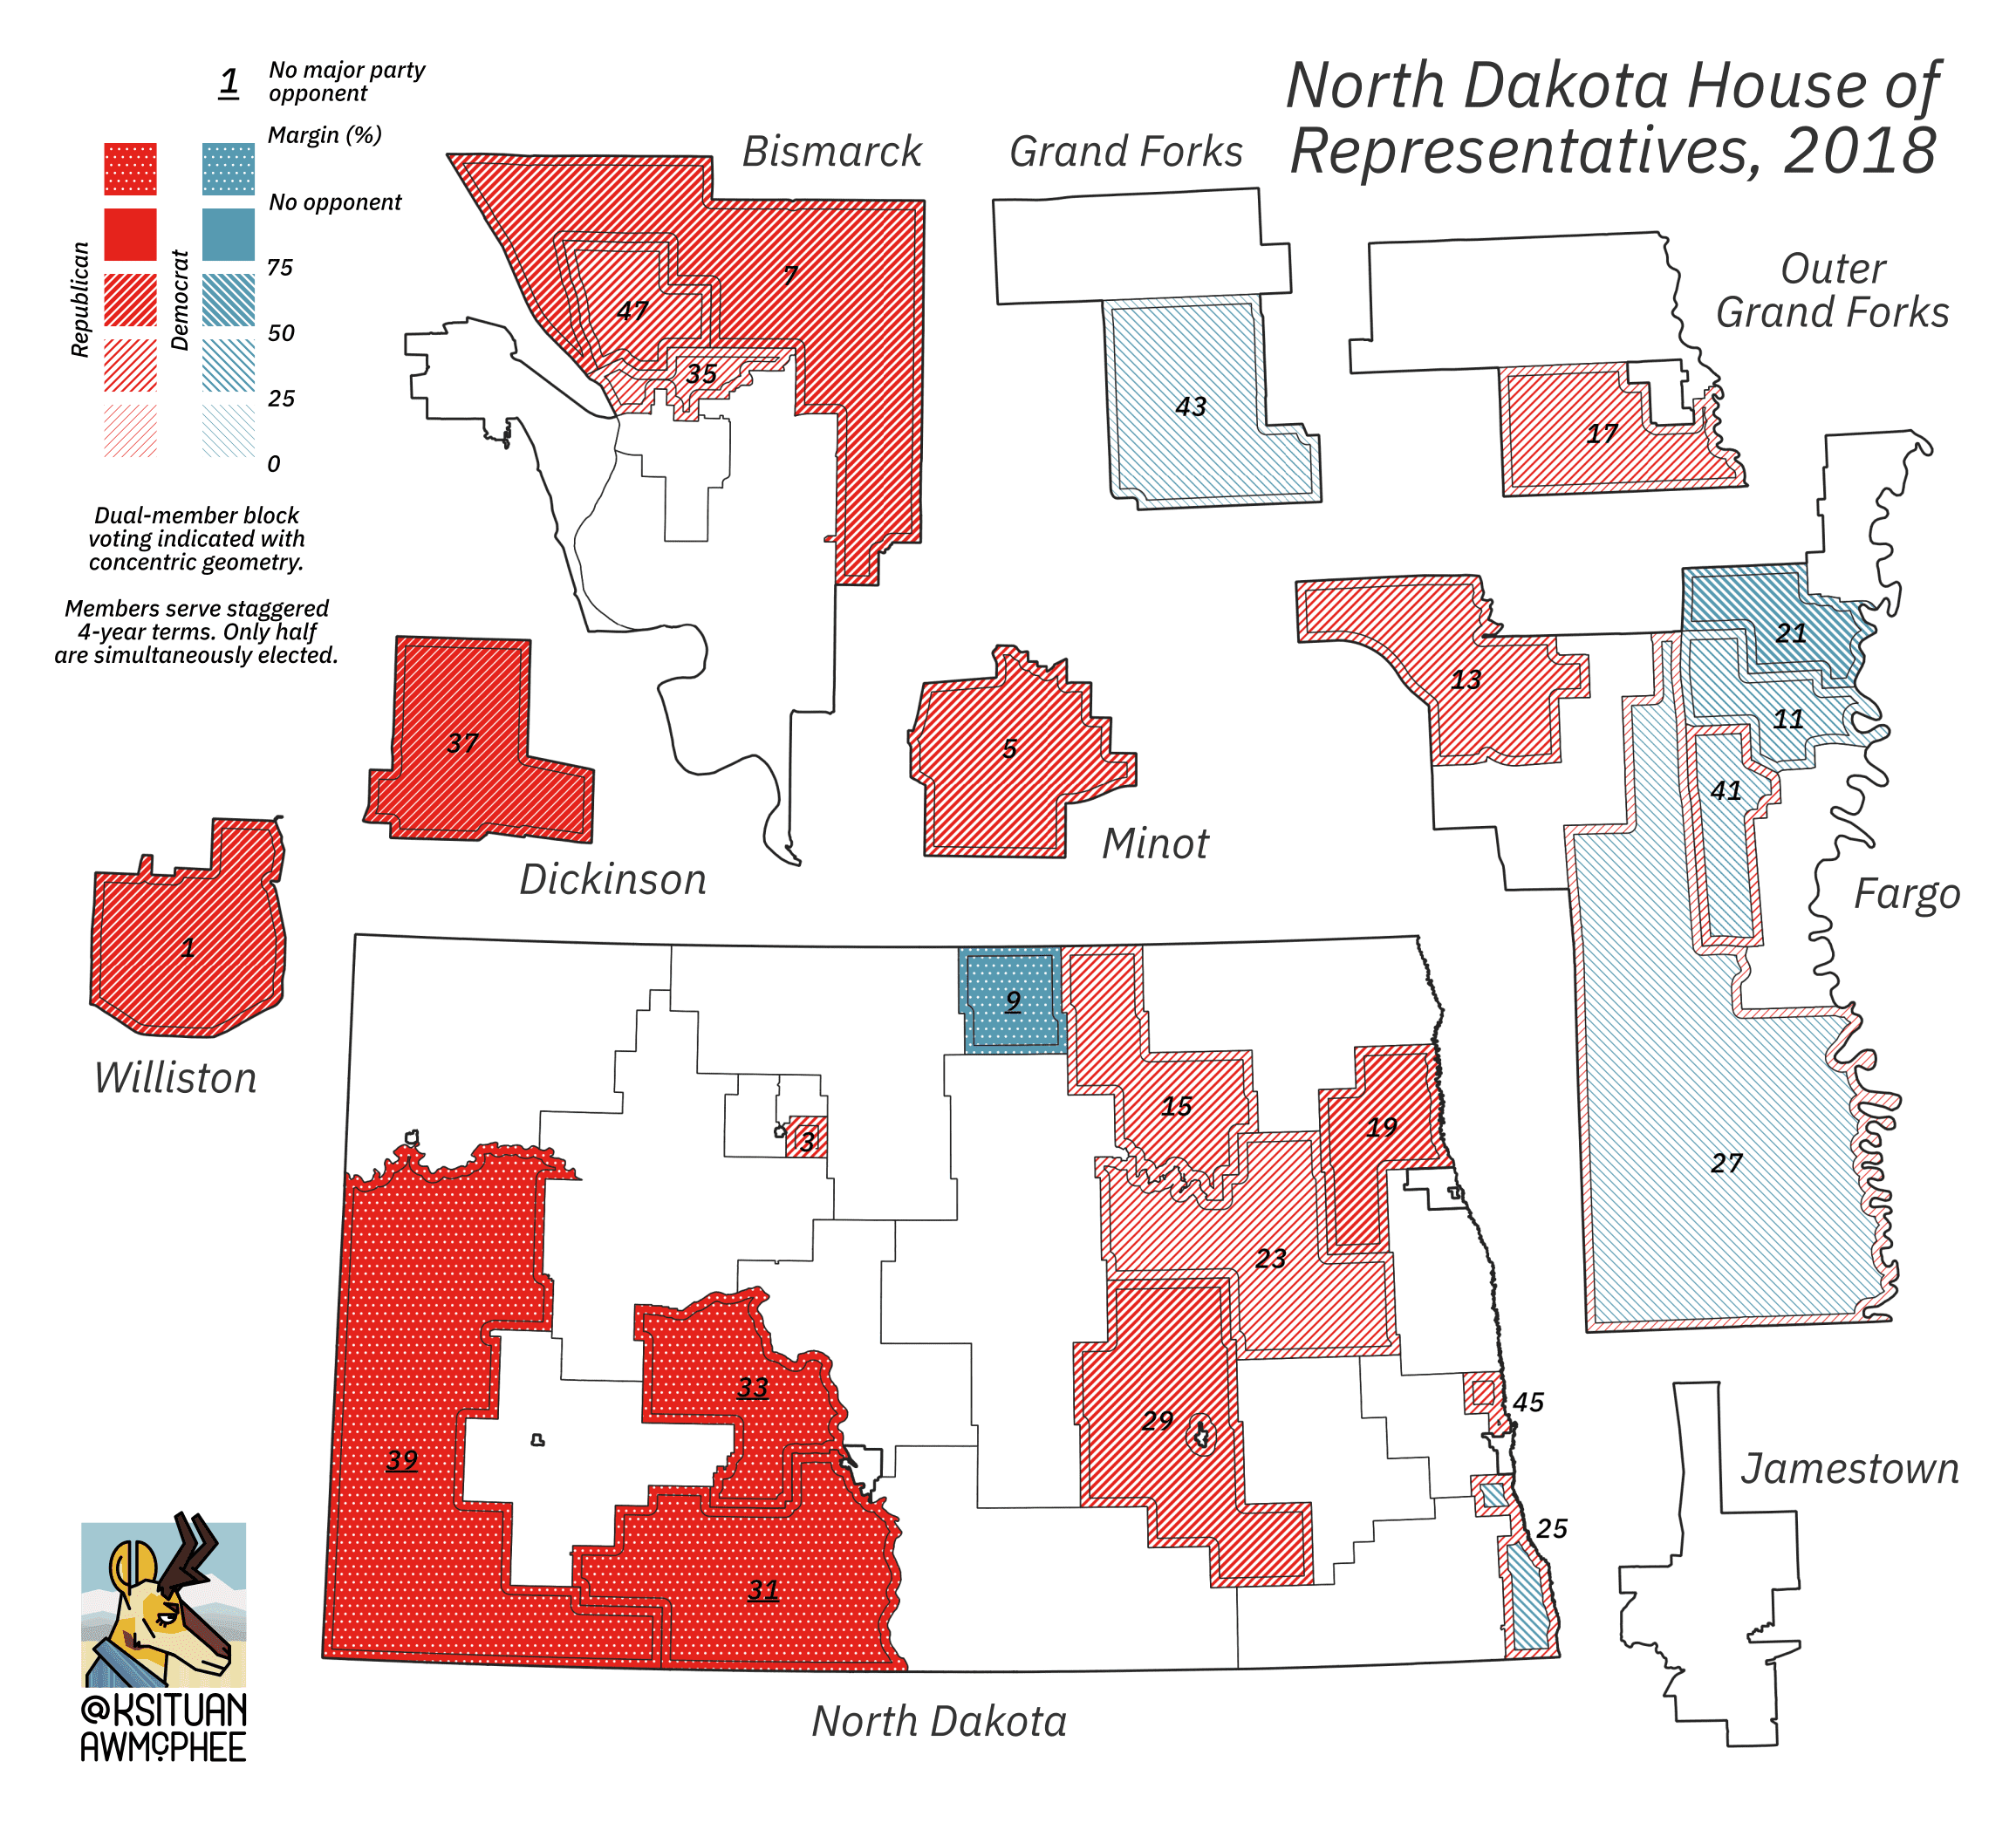 A political map of North Dakota.